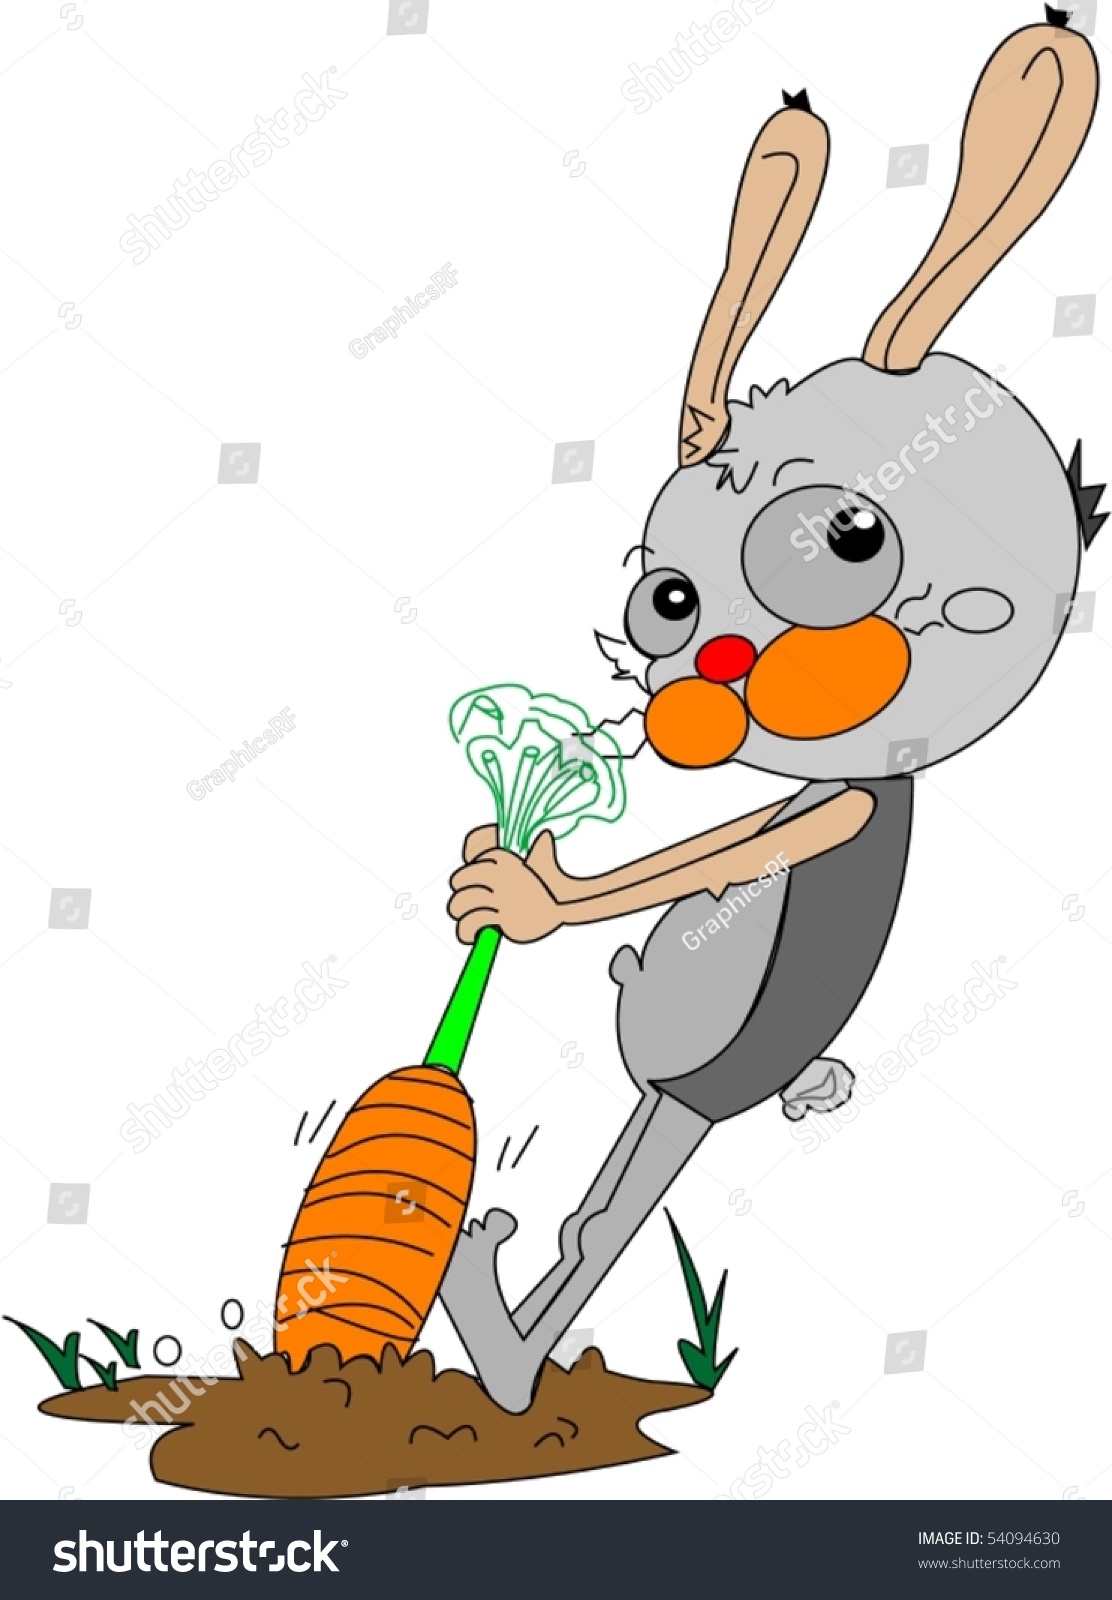 Illustration Rabbit Pulling Carrot On White Stock Vector Royalty Free Shutterstock